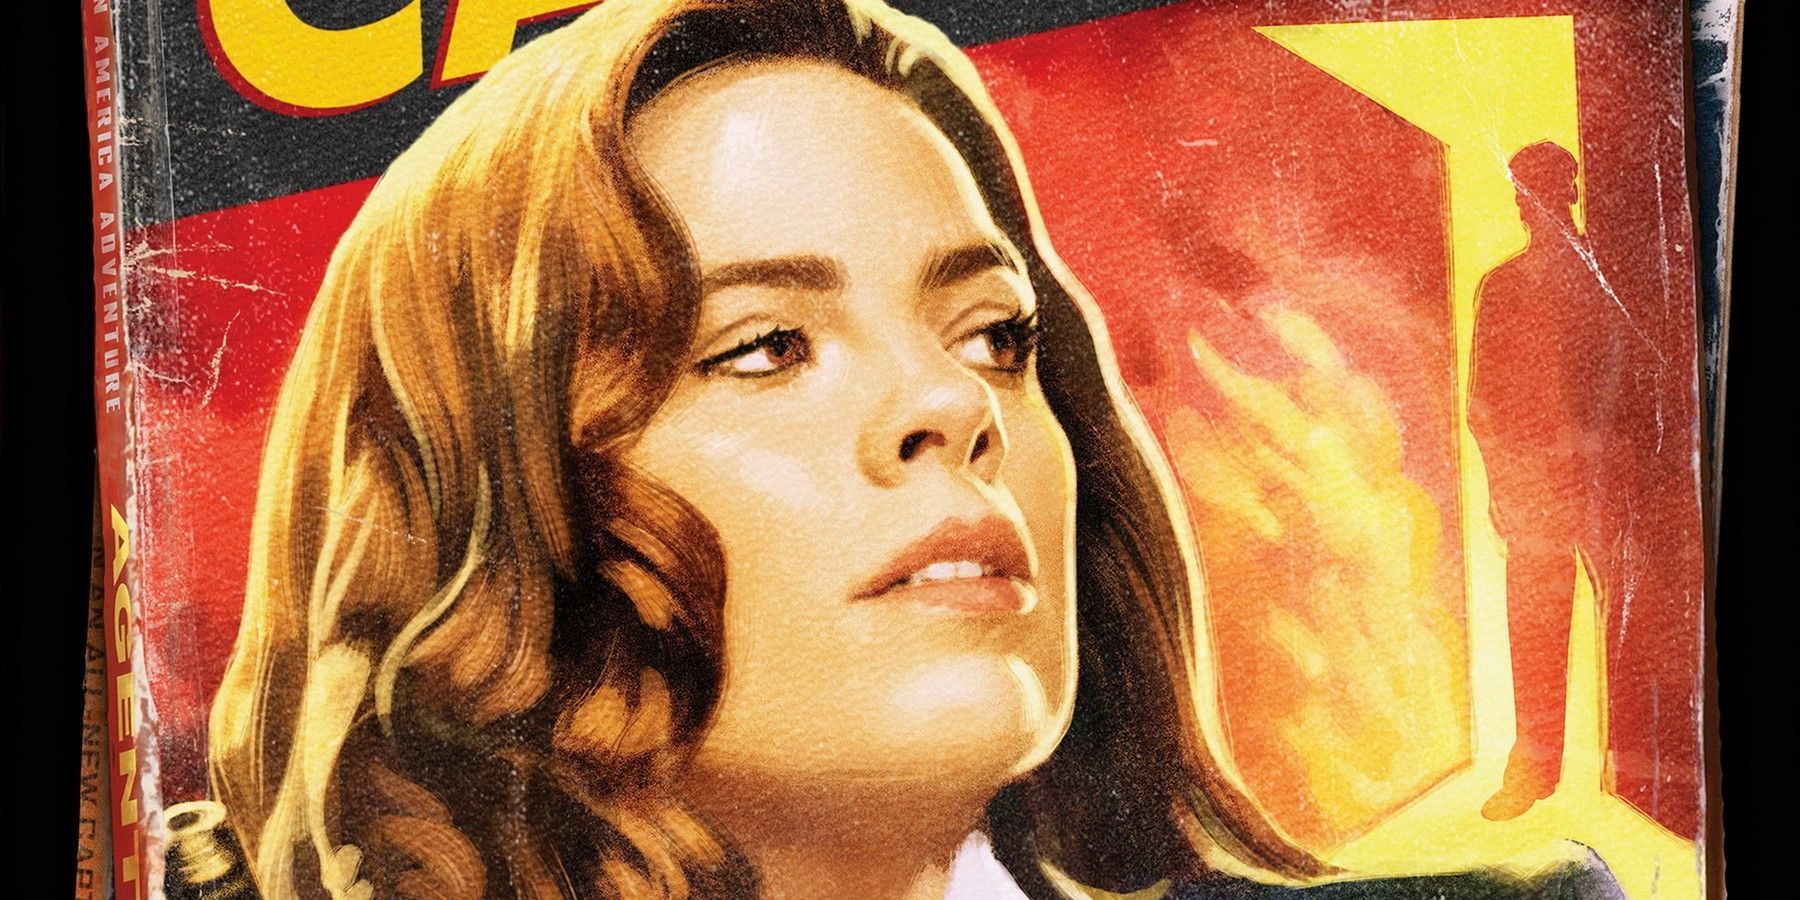 Marvel One Shot Agent Carter poster